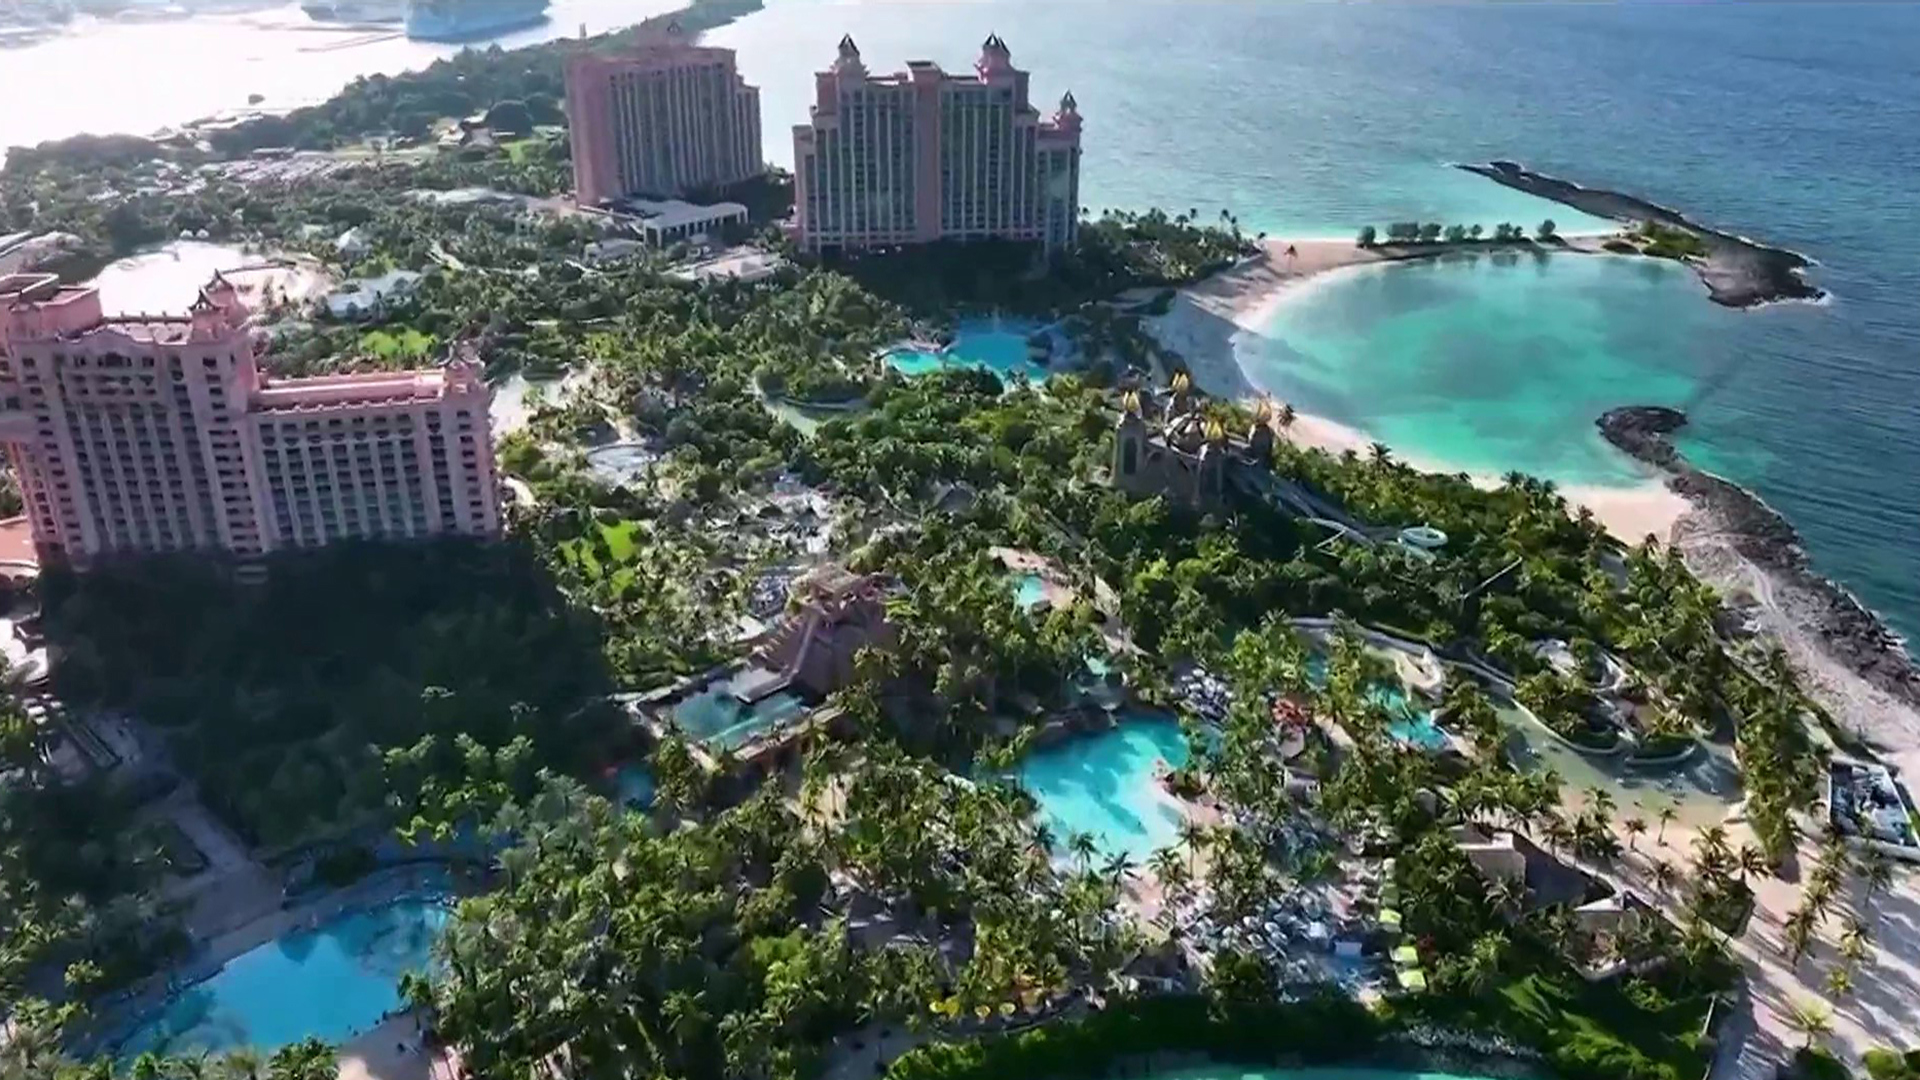 Maryland boy's shark attack: Video shows aftermath at Bahamas Resort